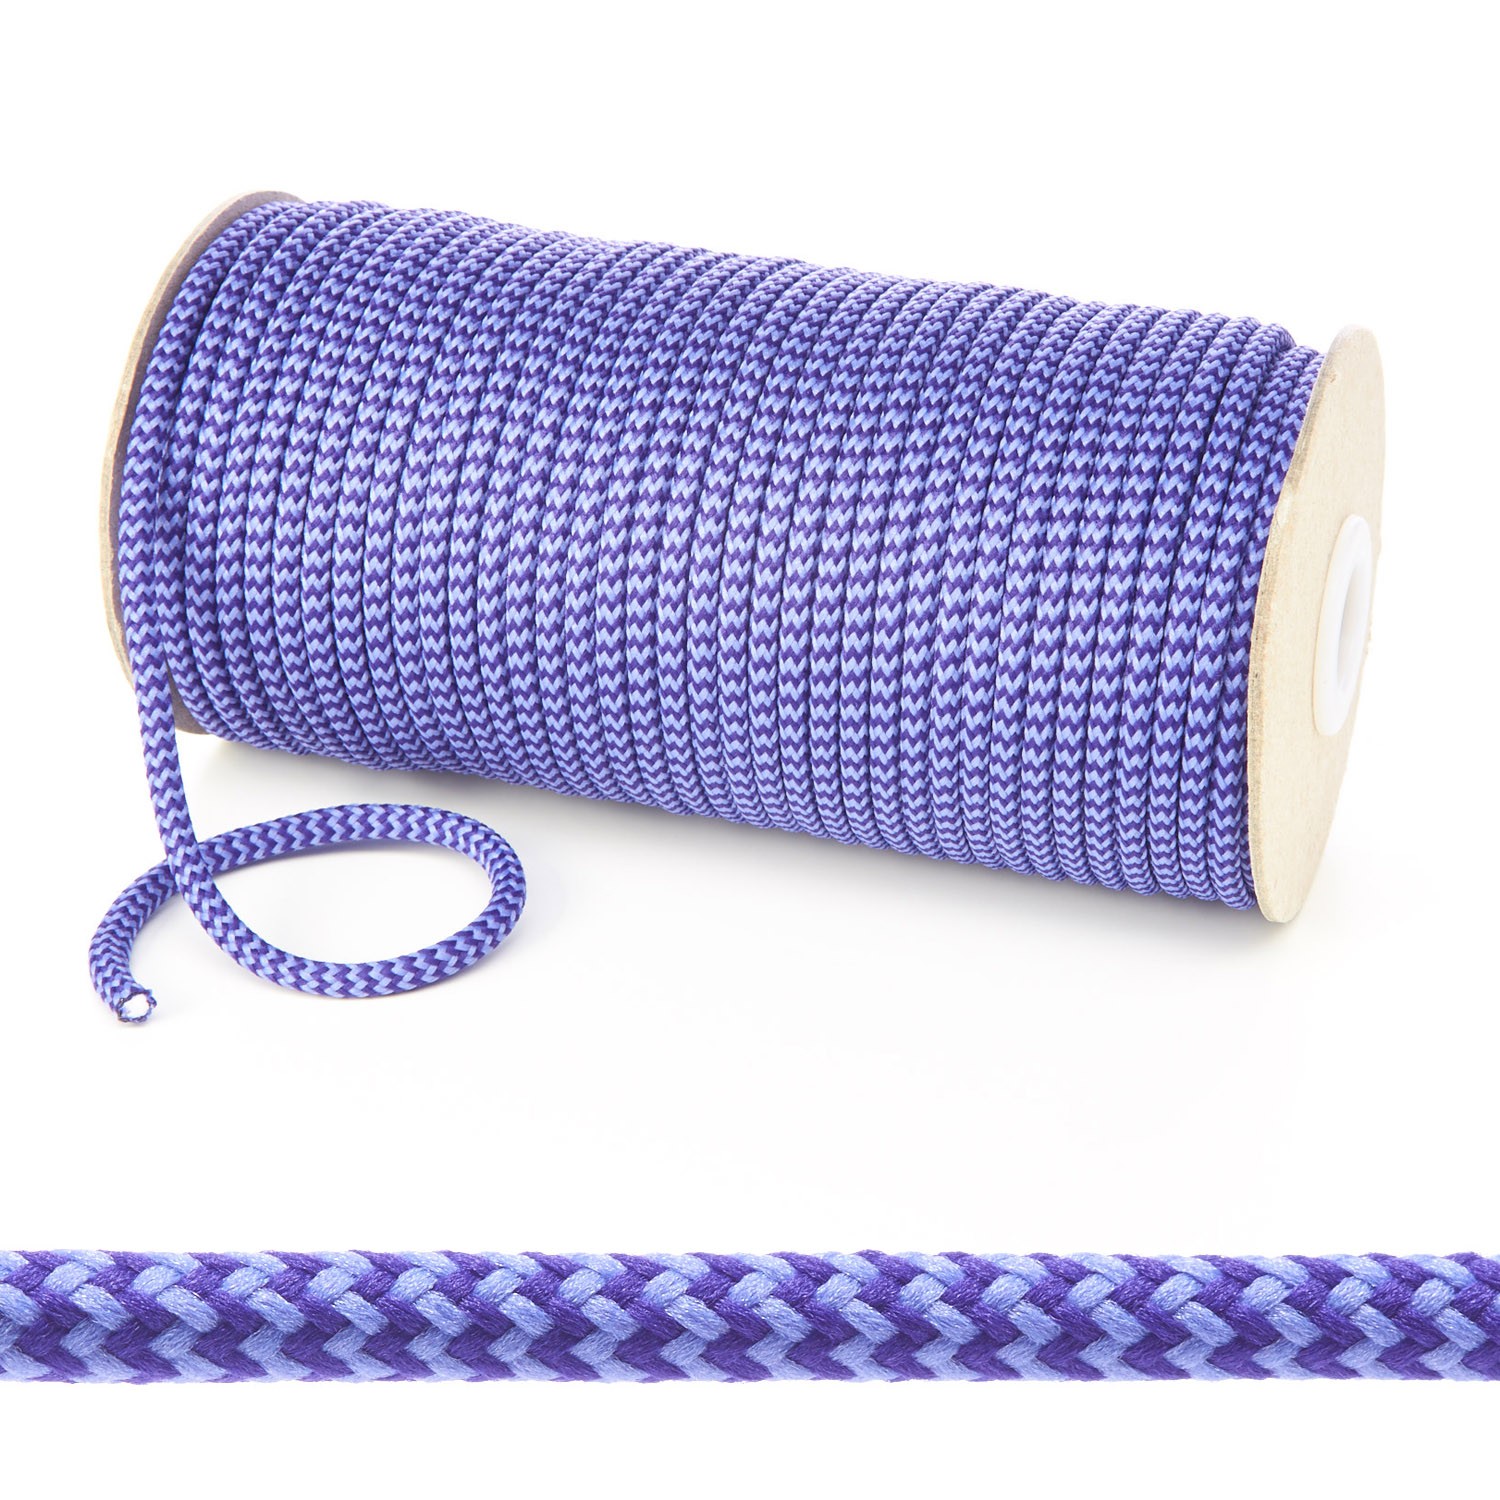 T621 5mm Round Cord Herringbone Draw String on Roll Purple Lilac Edit 6 Kalsi Cords